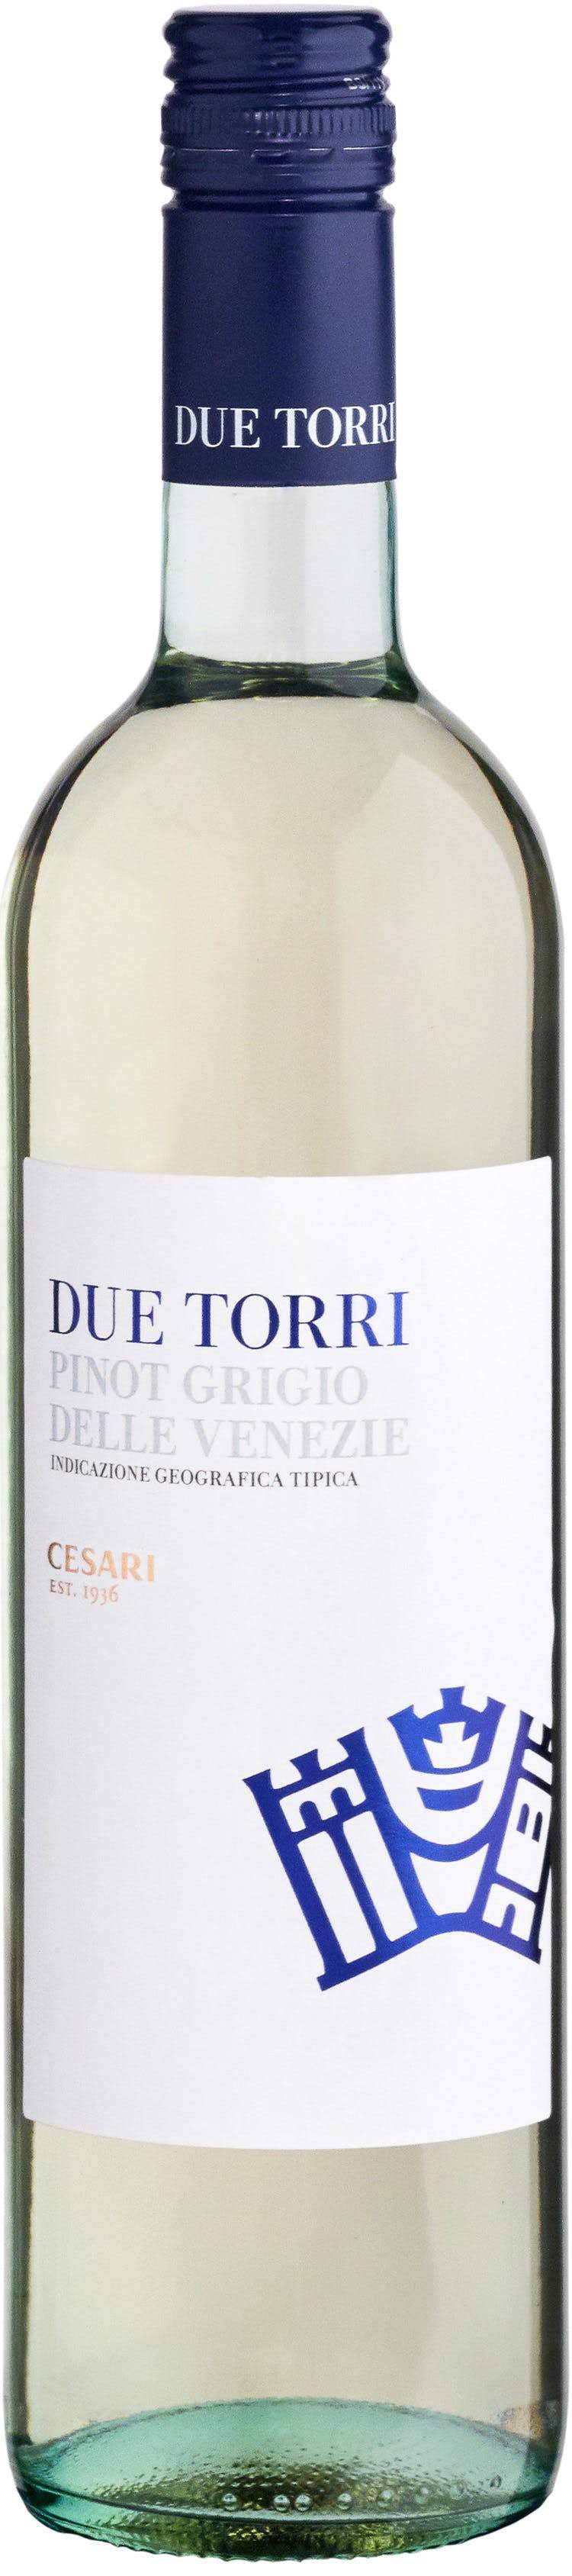 Due Torri Pinot Grigio 2018